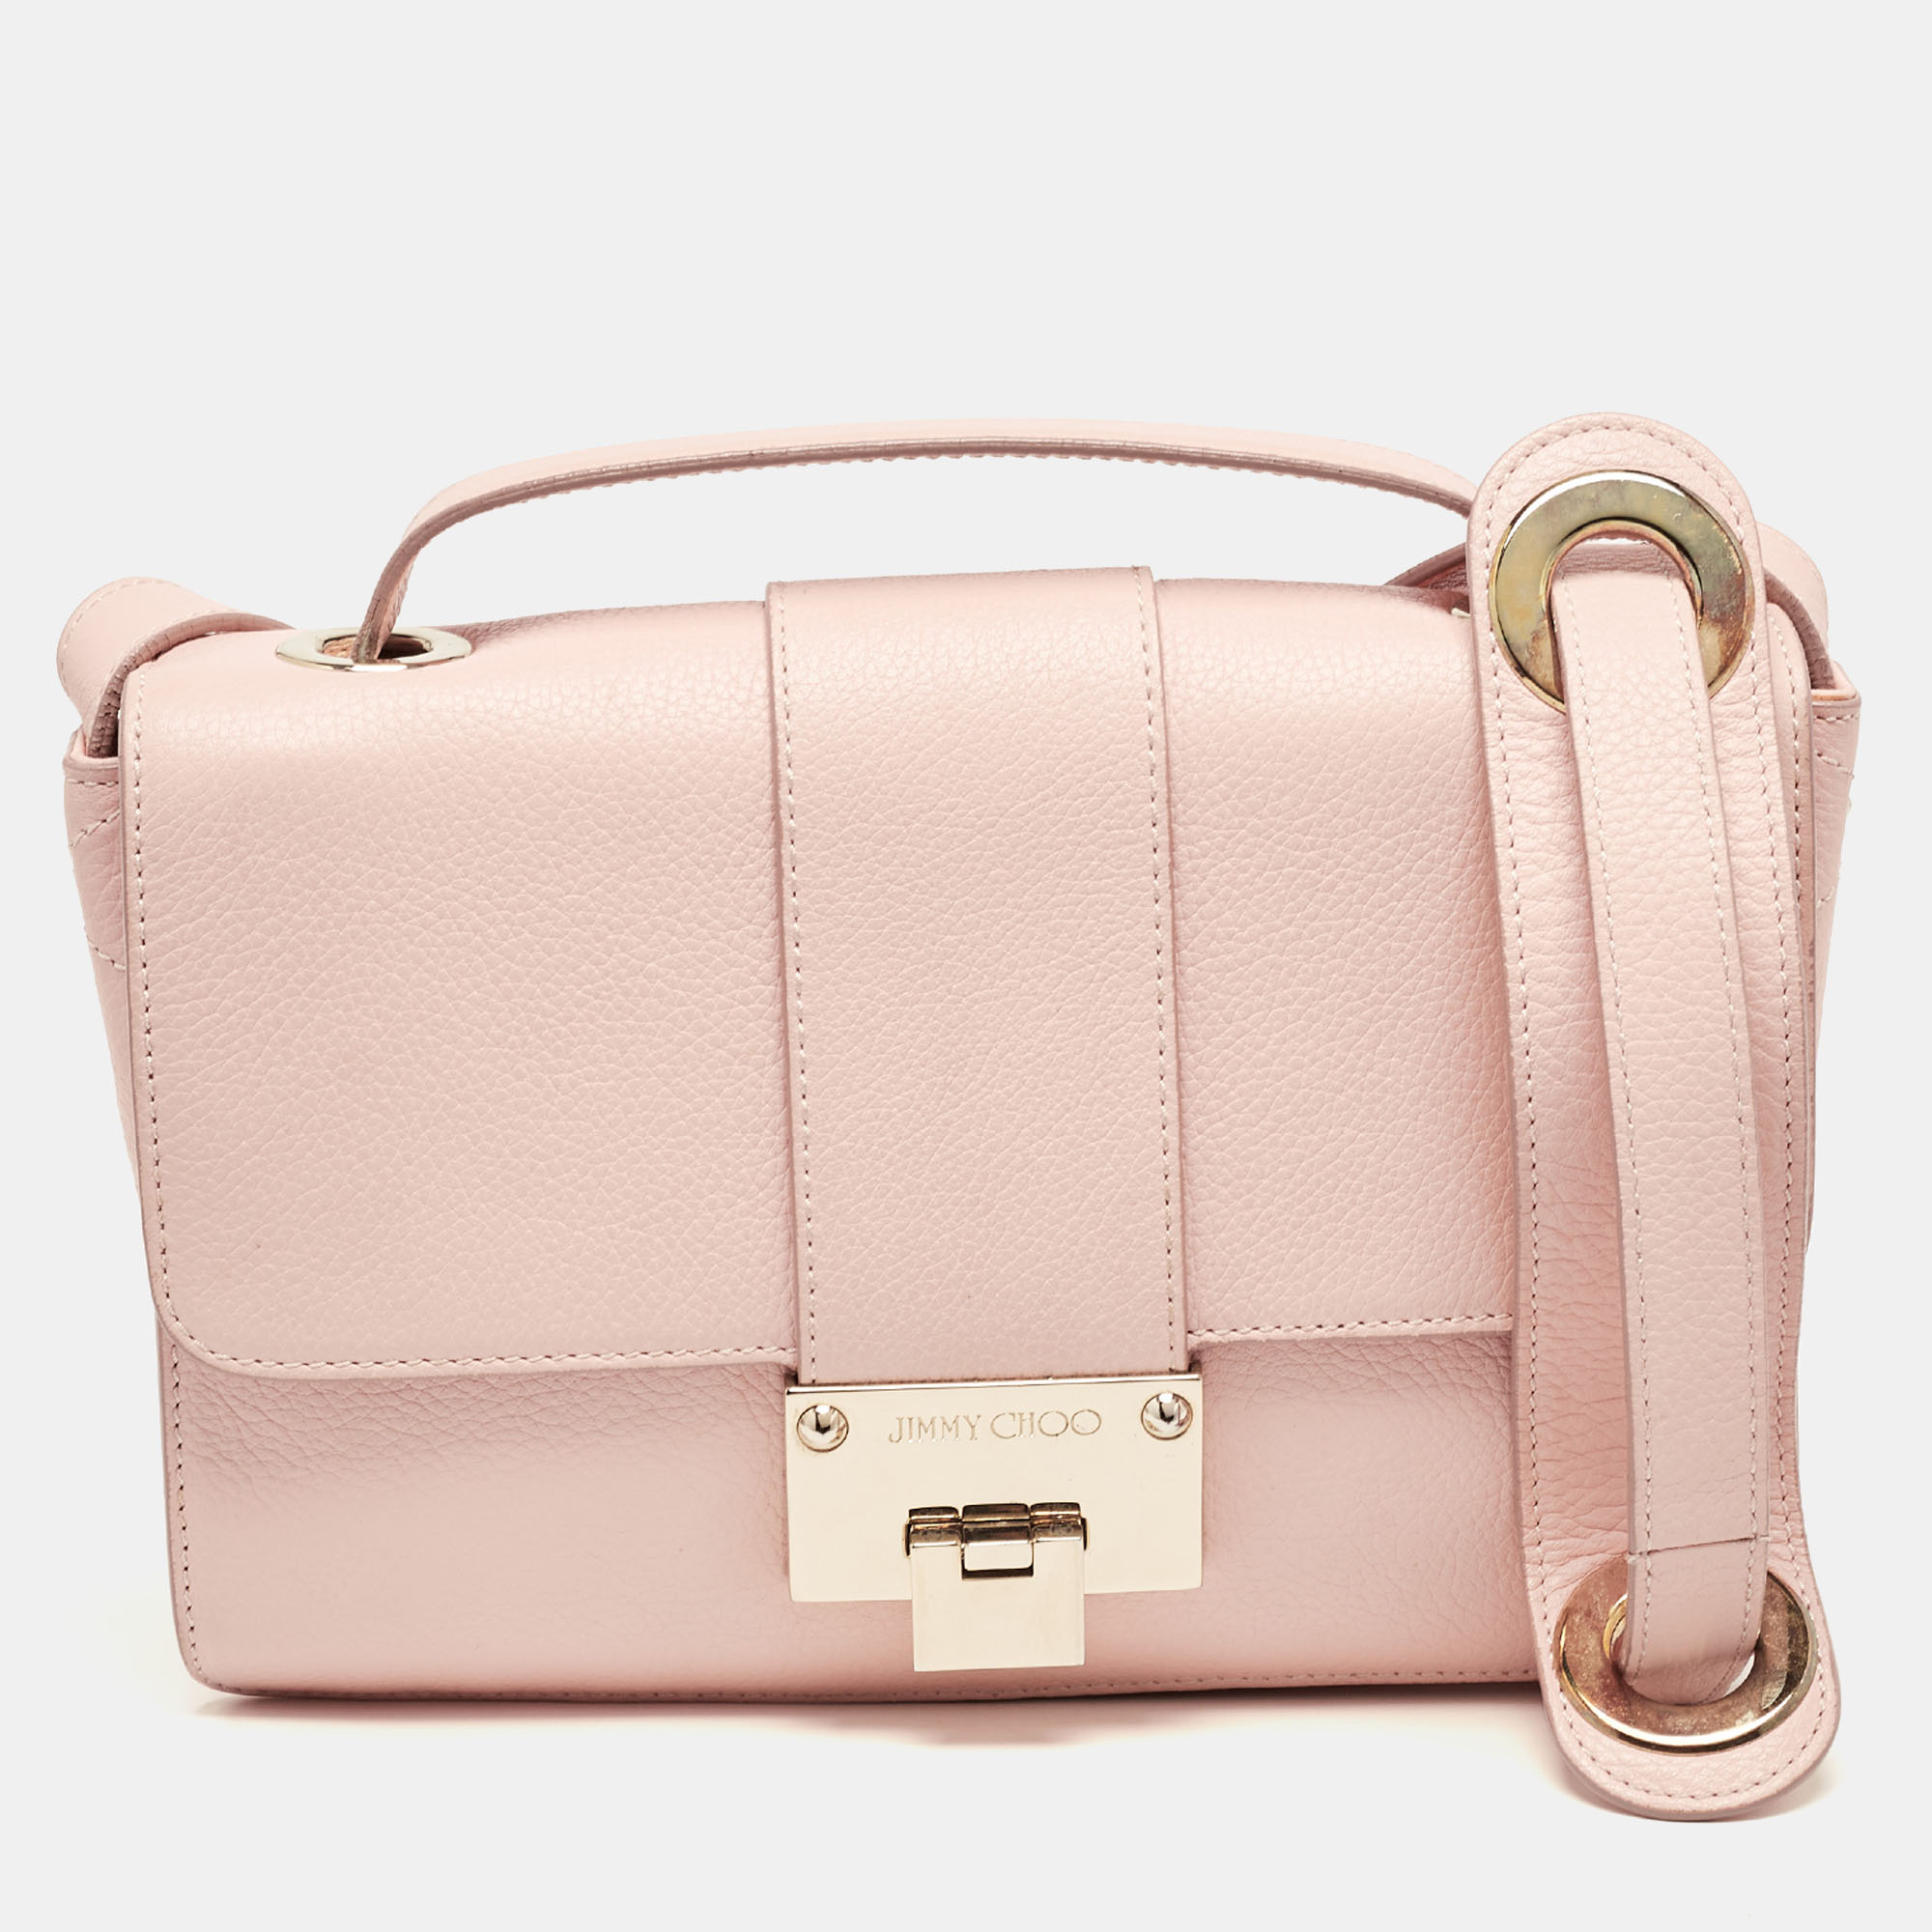 Pre-owned Jimmy Choo Pink Leather Rebel Flap Top Handle Bag